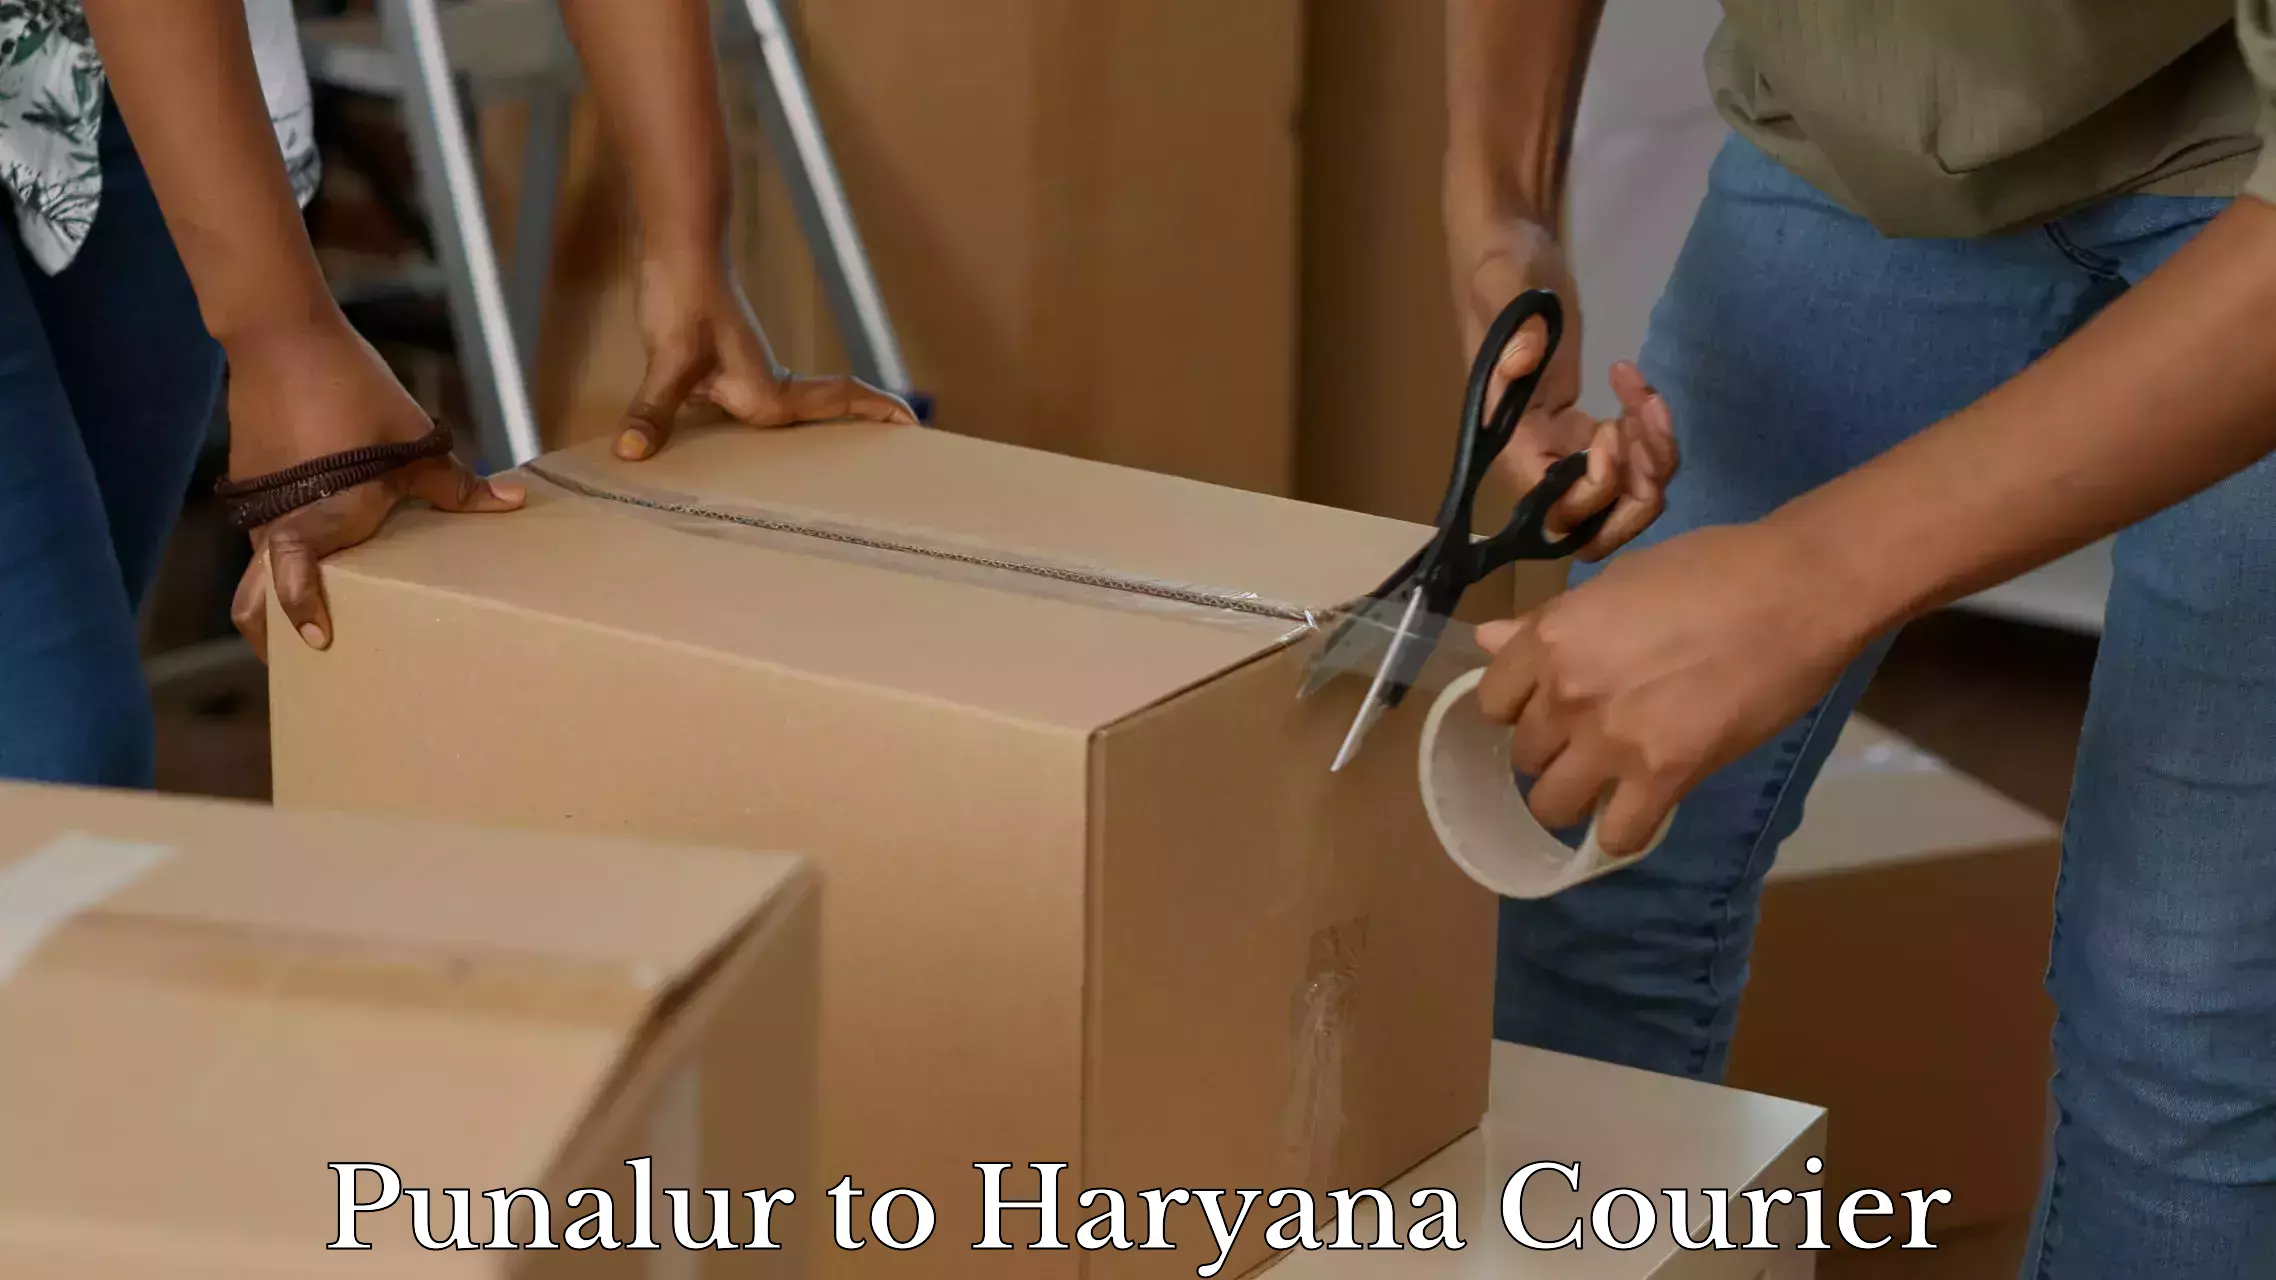 Baggage handling services Punalur to NCR Haryana